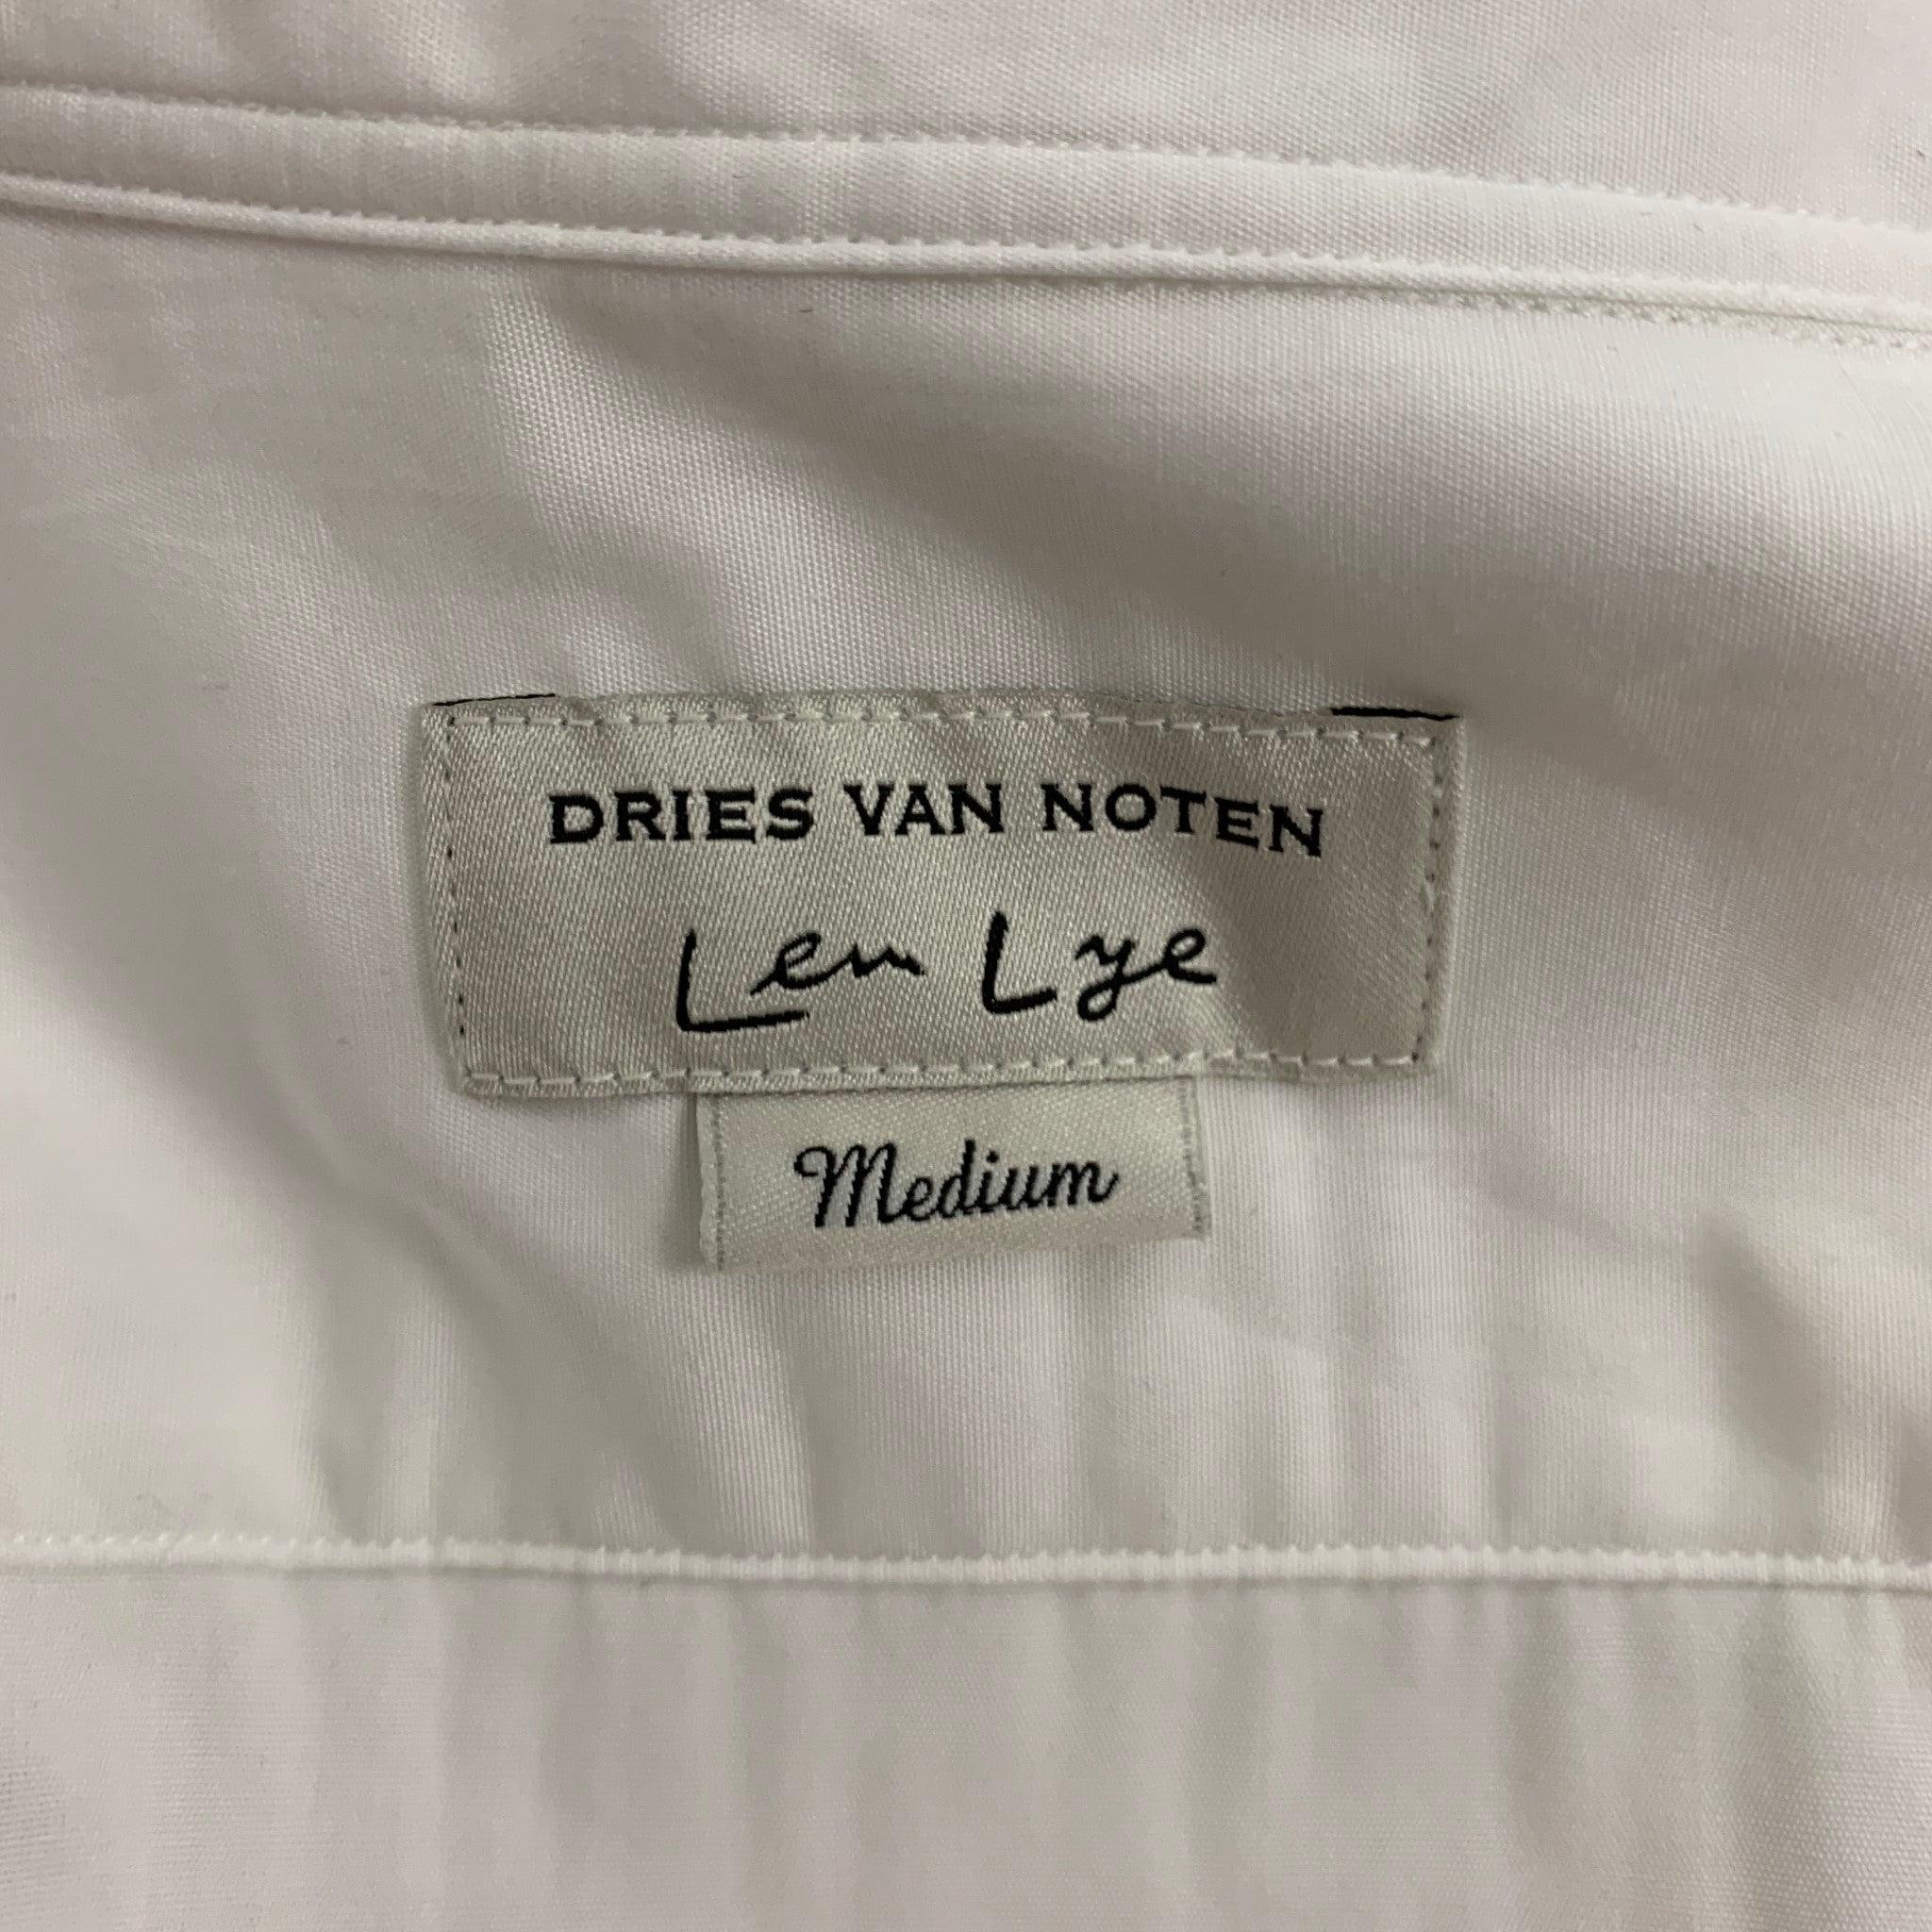 DRIES VAN NOTEN x LEN LYE Size M White Cotton Shirt Jacket Shirt For Sale 2